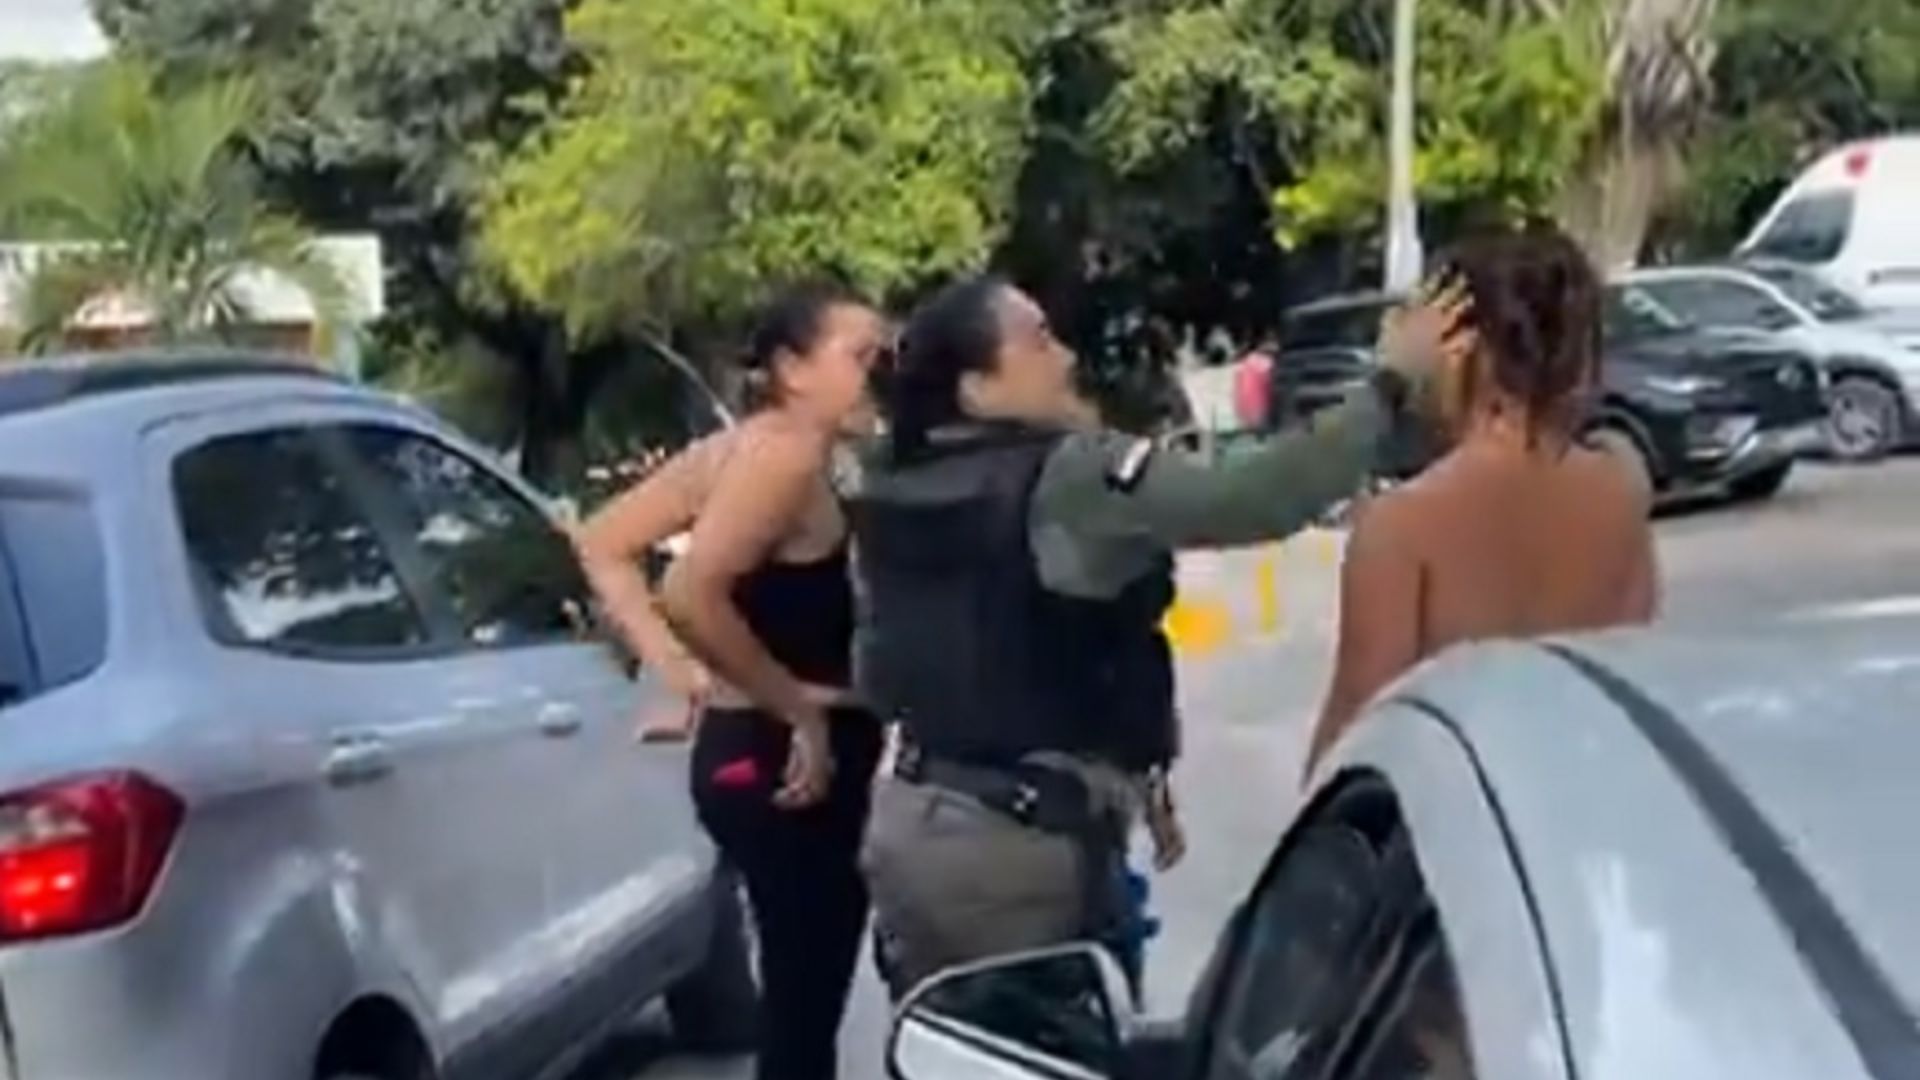 Policial dando tapa em mulher. Foto: Reprodução